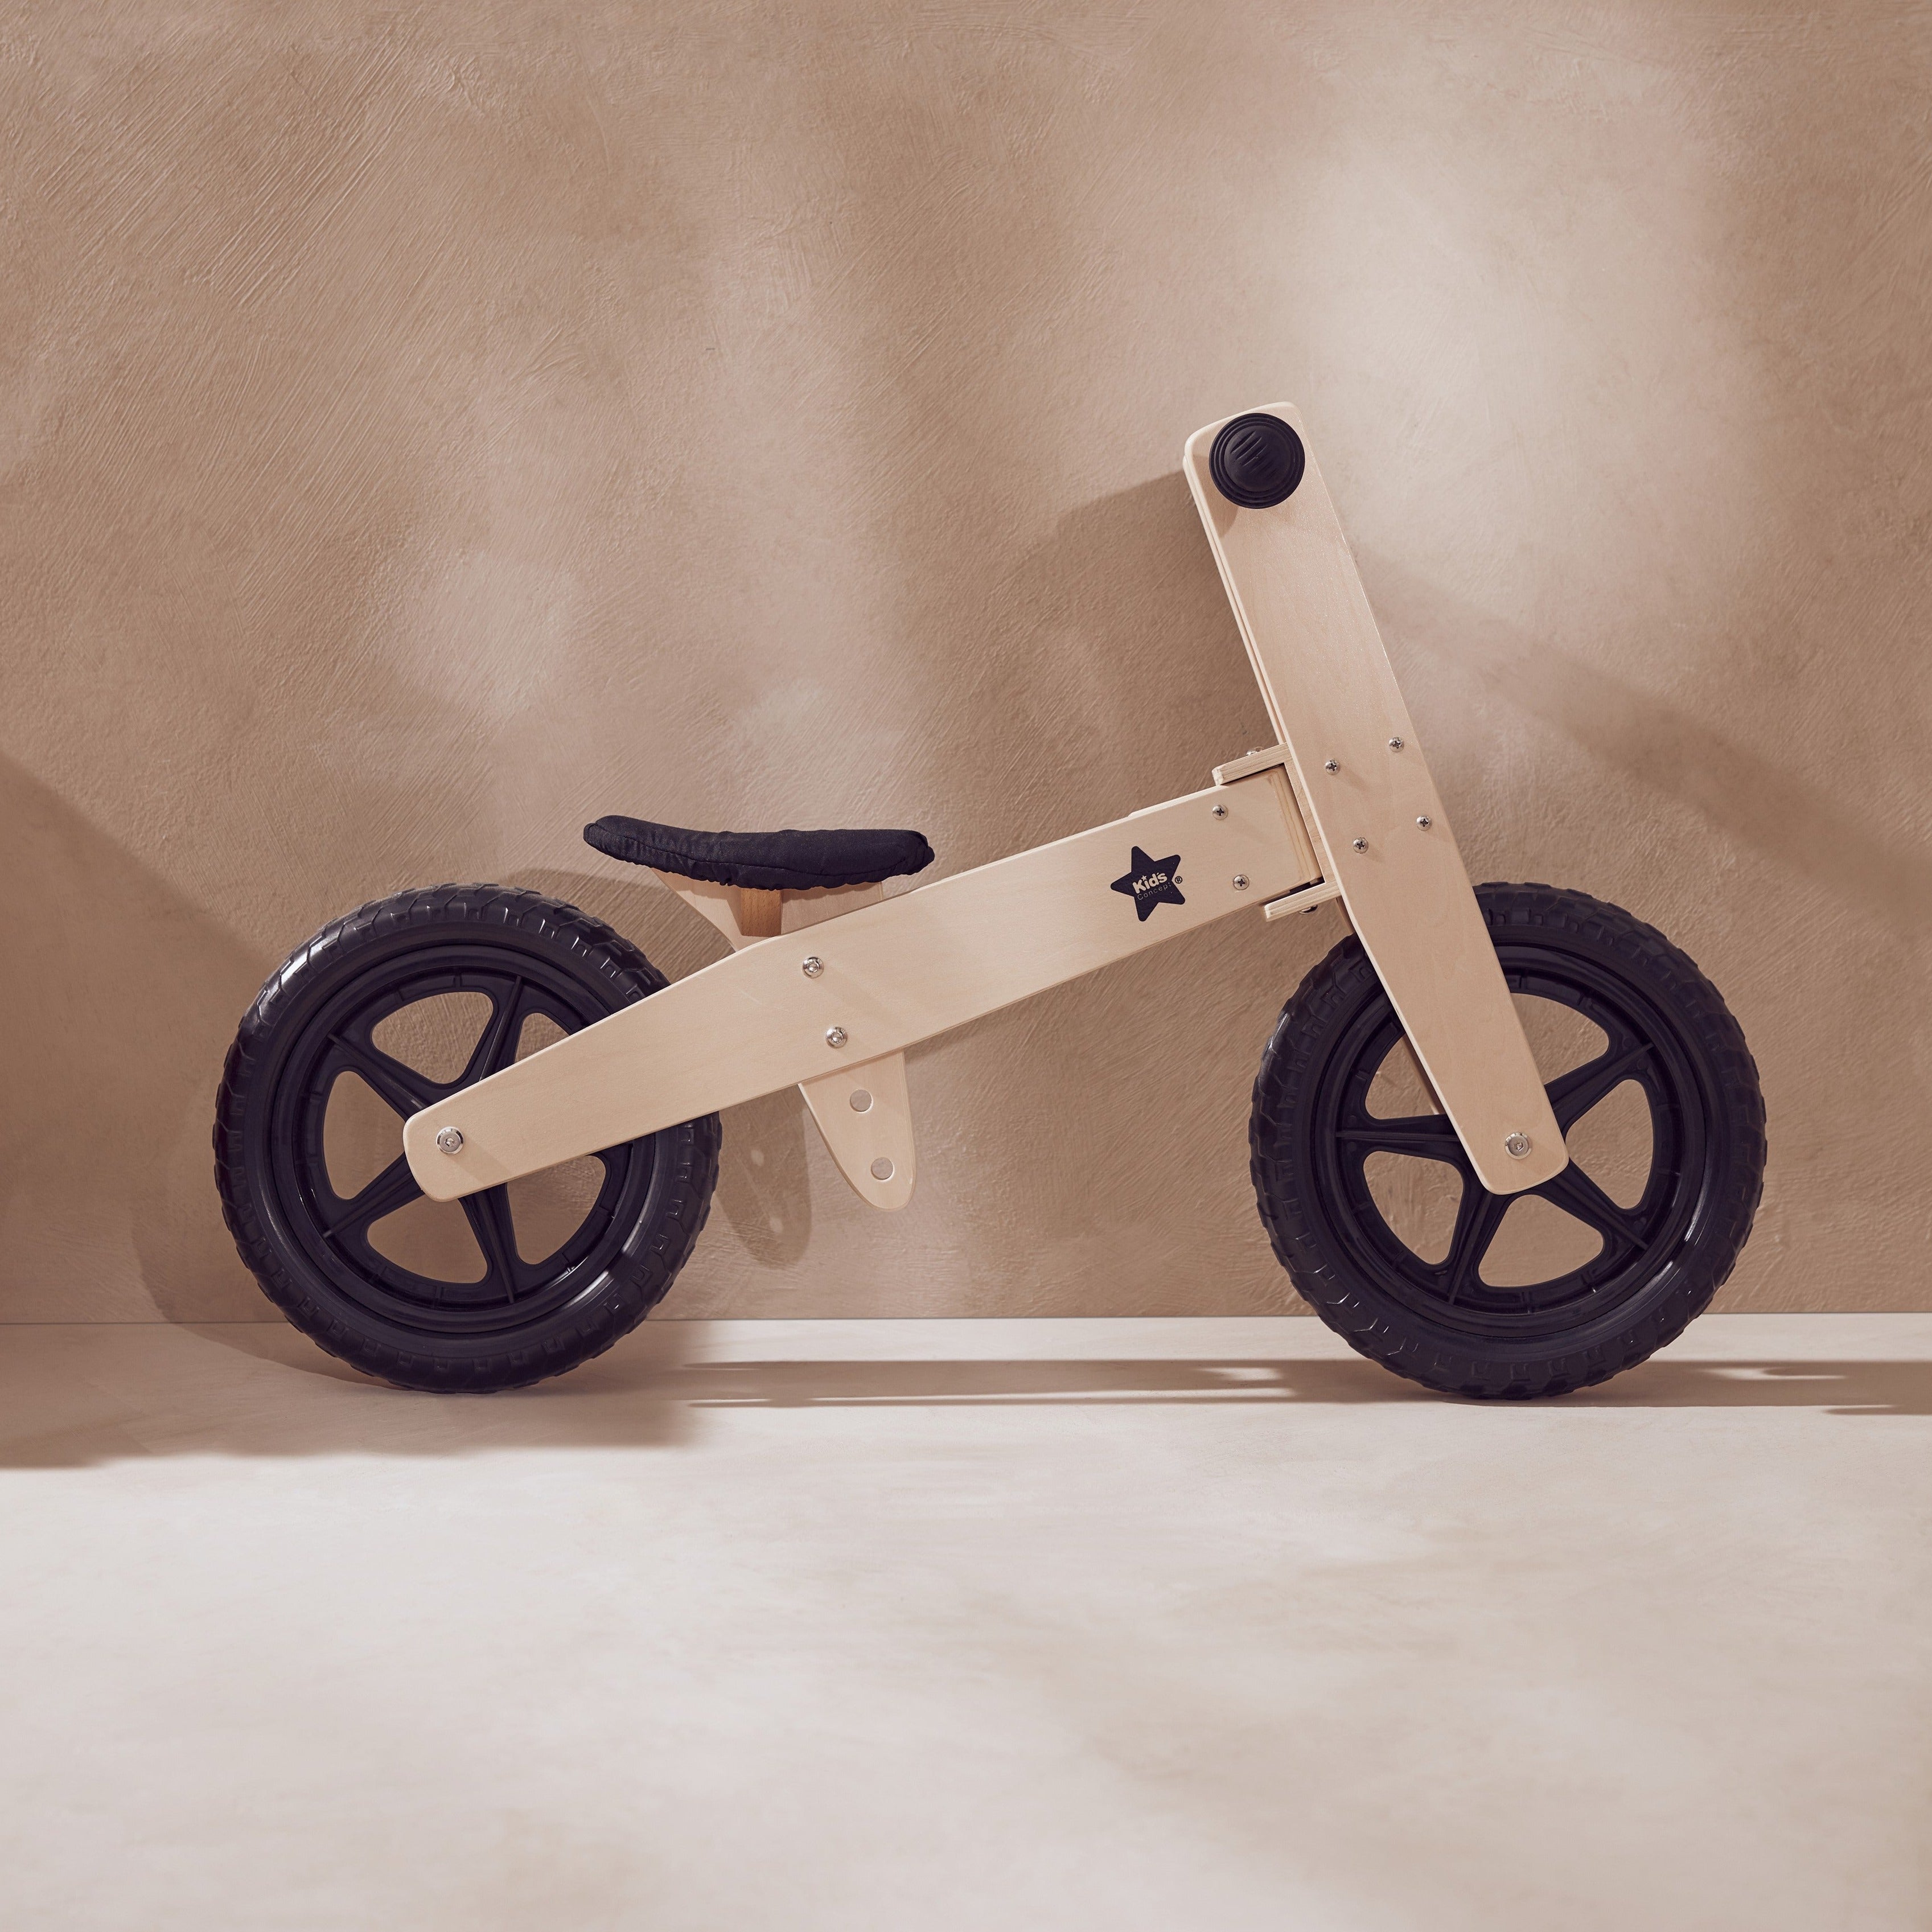 Laufrad aus Holz - stabil & hochwertige Qualität von Kids Concept